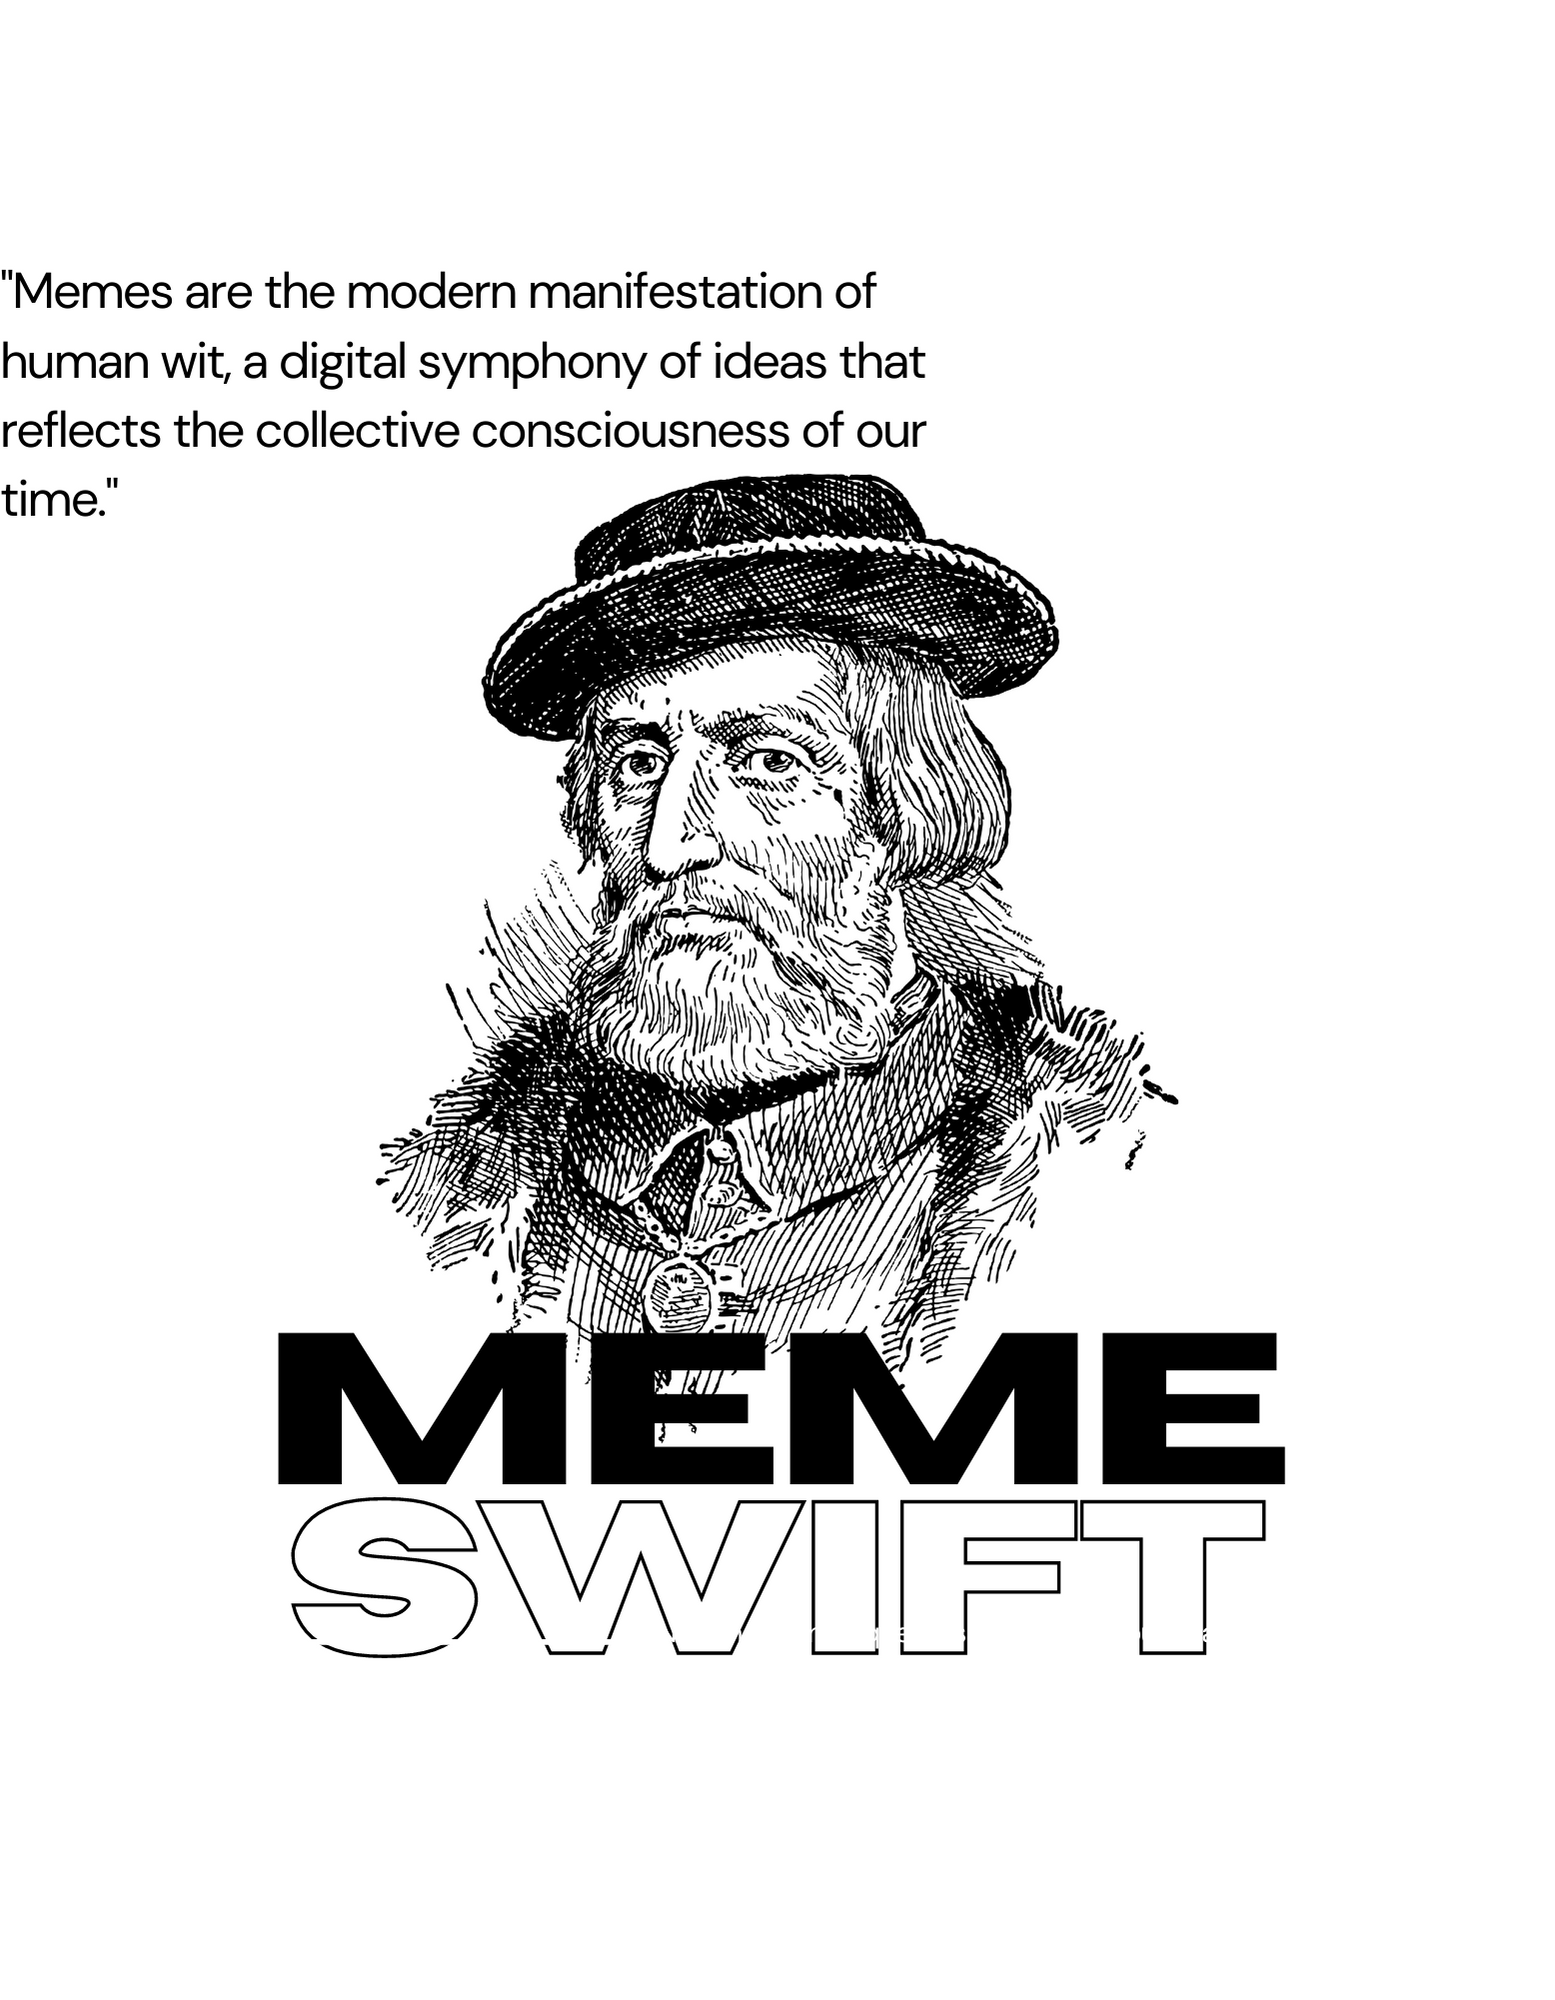 MemesWift: una herramienta para transformar fotos en memes